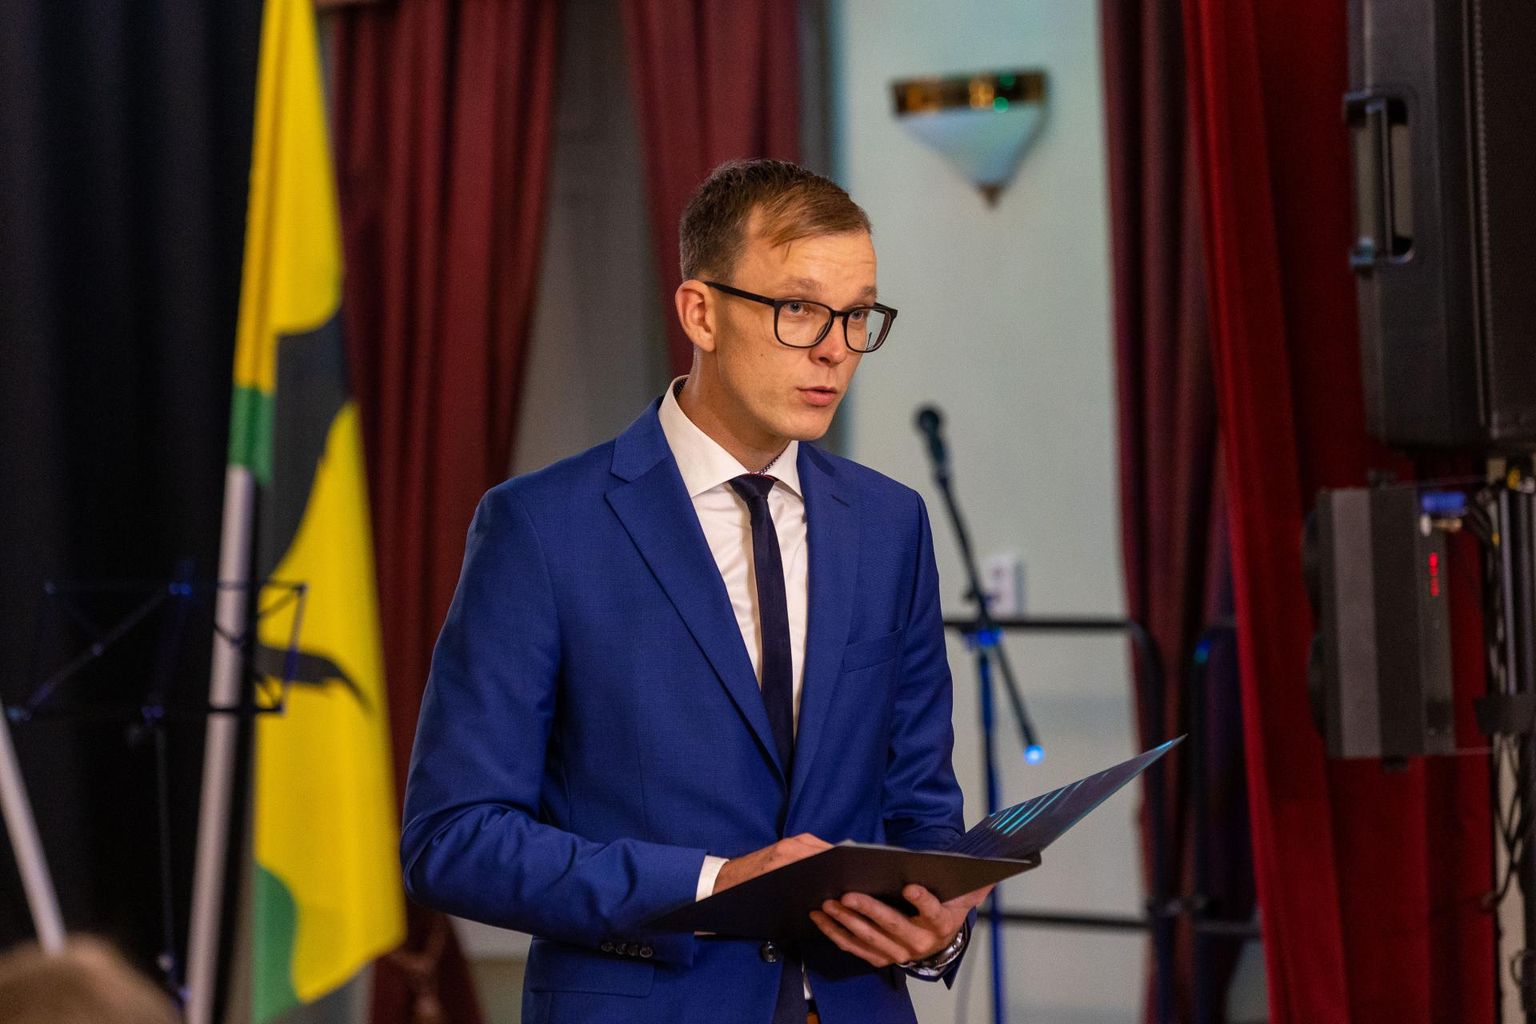 Eesti Linnade ja Valdade Liidu asedirektor Rait Pihelgas räägib omavalitsuste rollist rohepöördes.